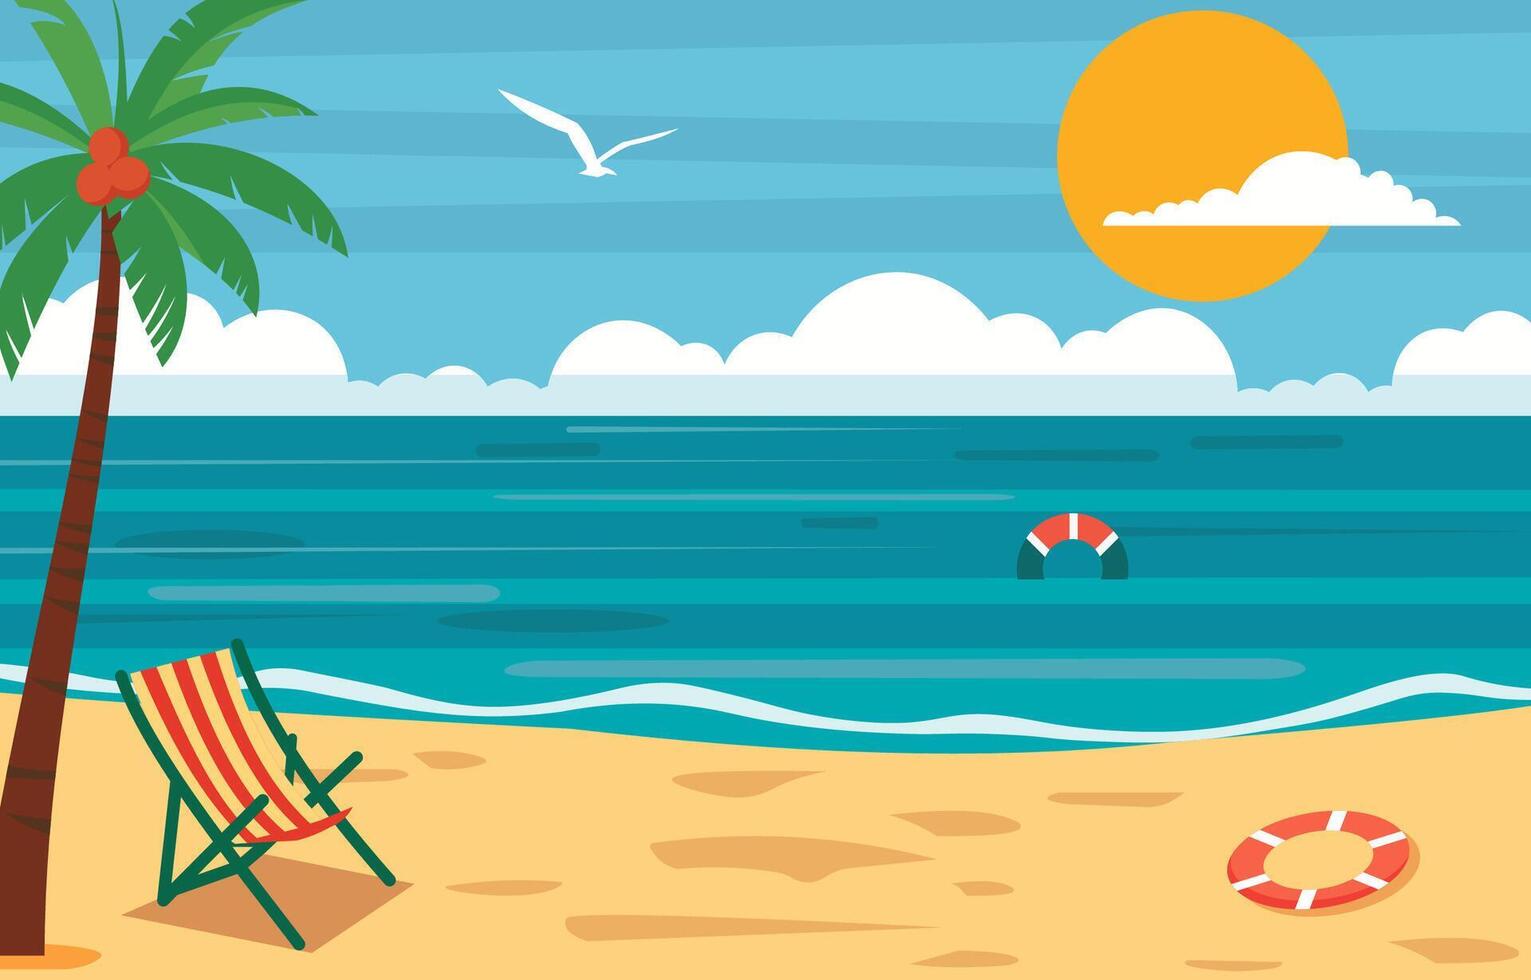 platt design av sommar i strand med handflatan träd och ljus himmel vektor